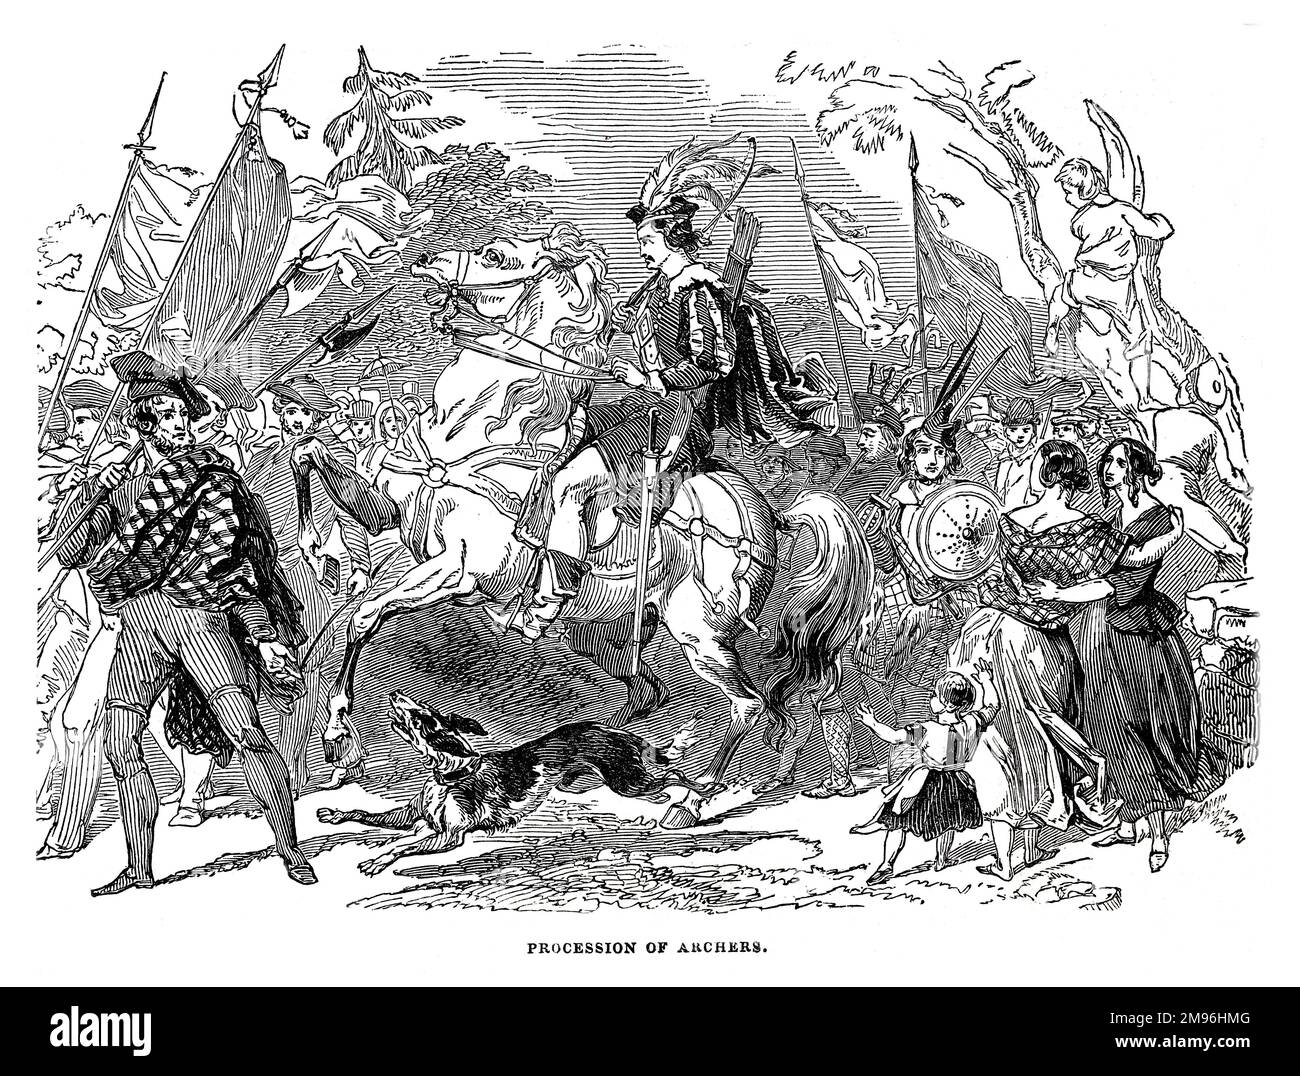 Burns Festival in Ayr, 1844: Processione di Arcieri. Illustrazione in bianco e nero da The London Illustrated News; agosto 1844. Foto Stock